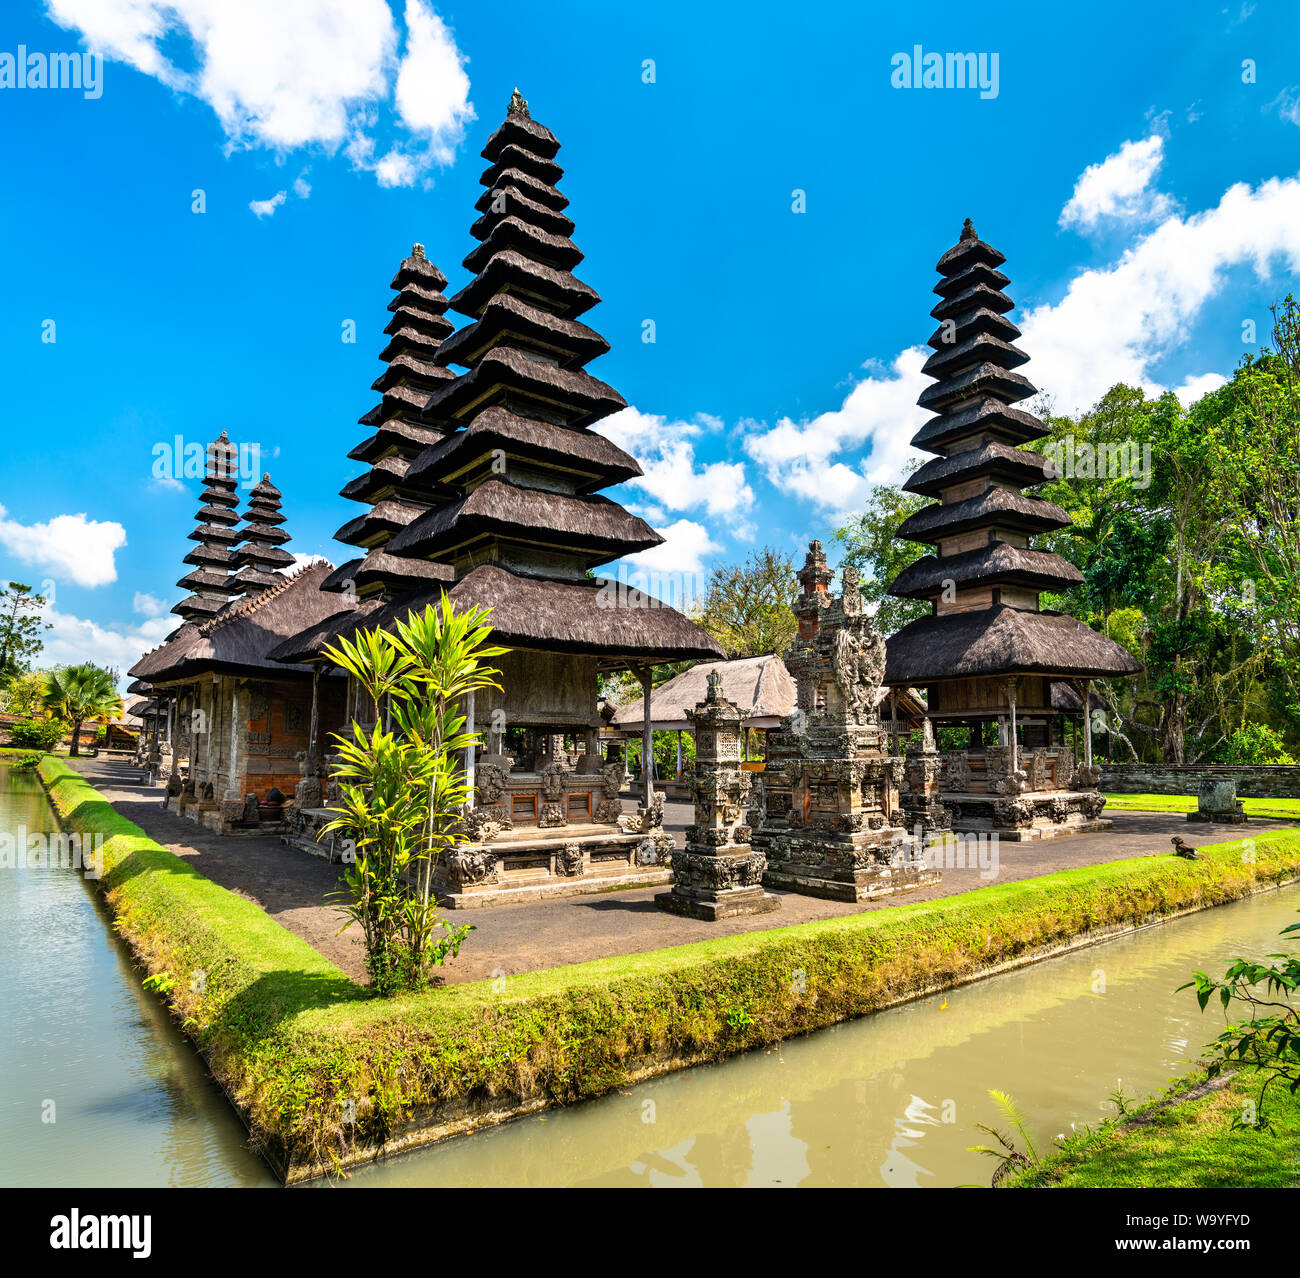 Pura Taman Ayun Temple in Bali, Indonesia Stock Photo